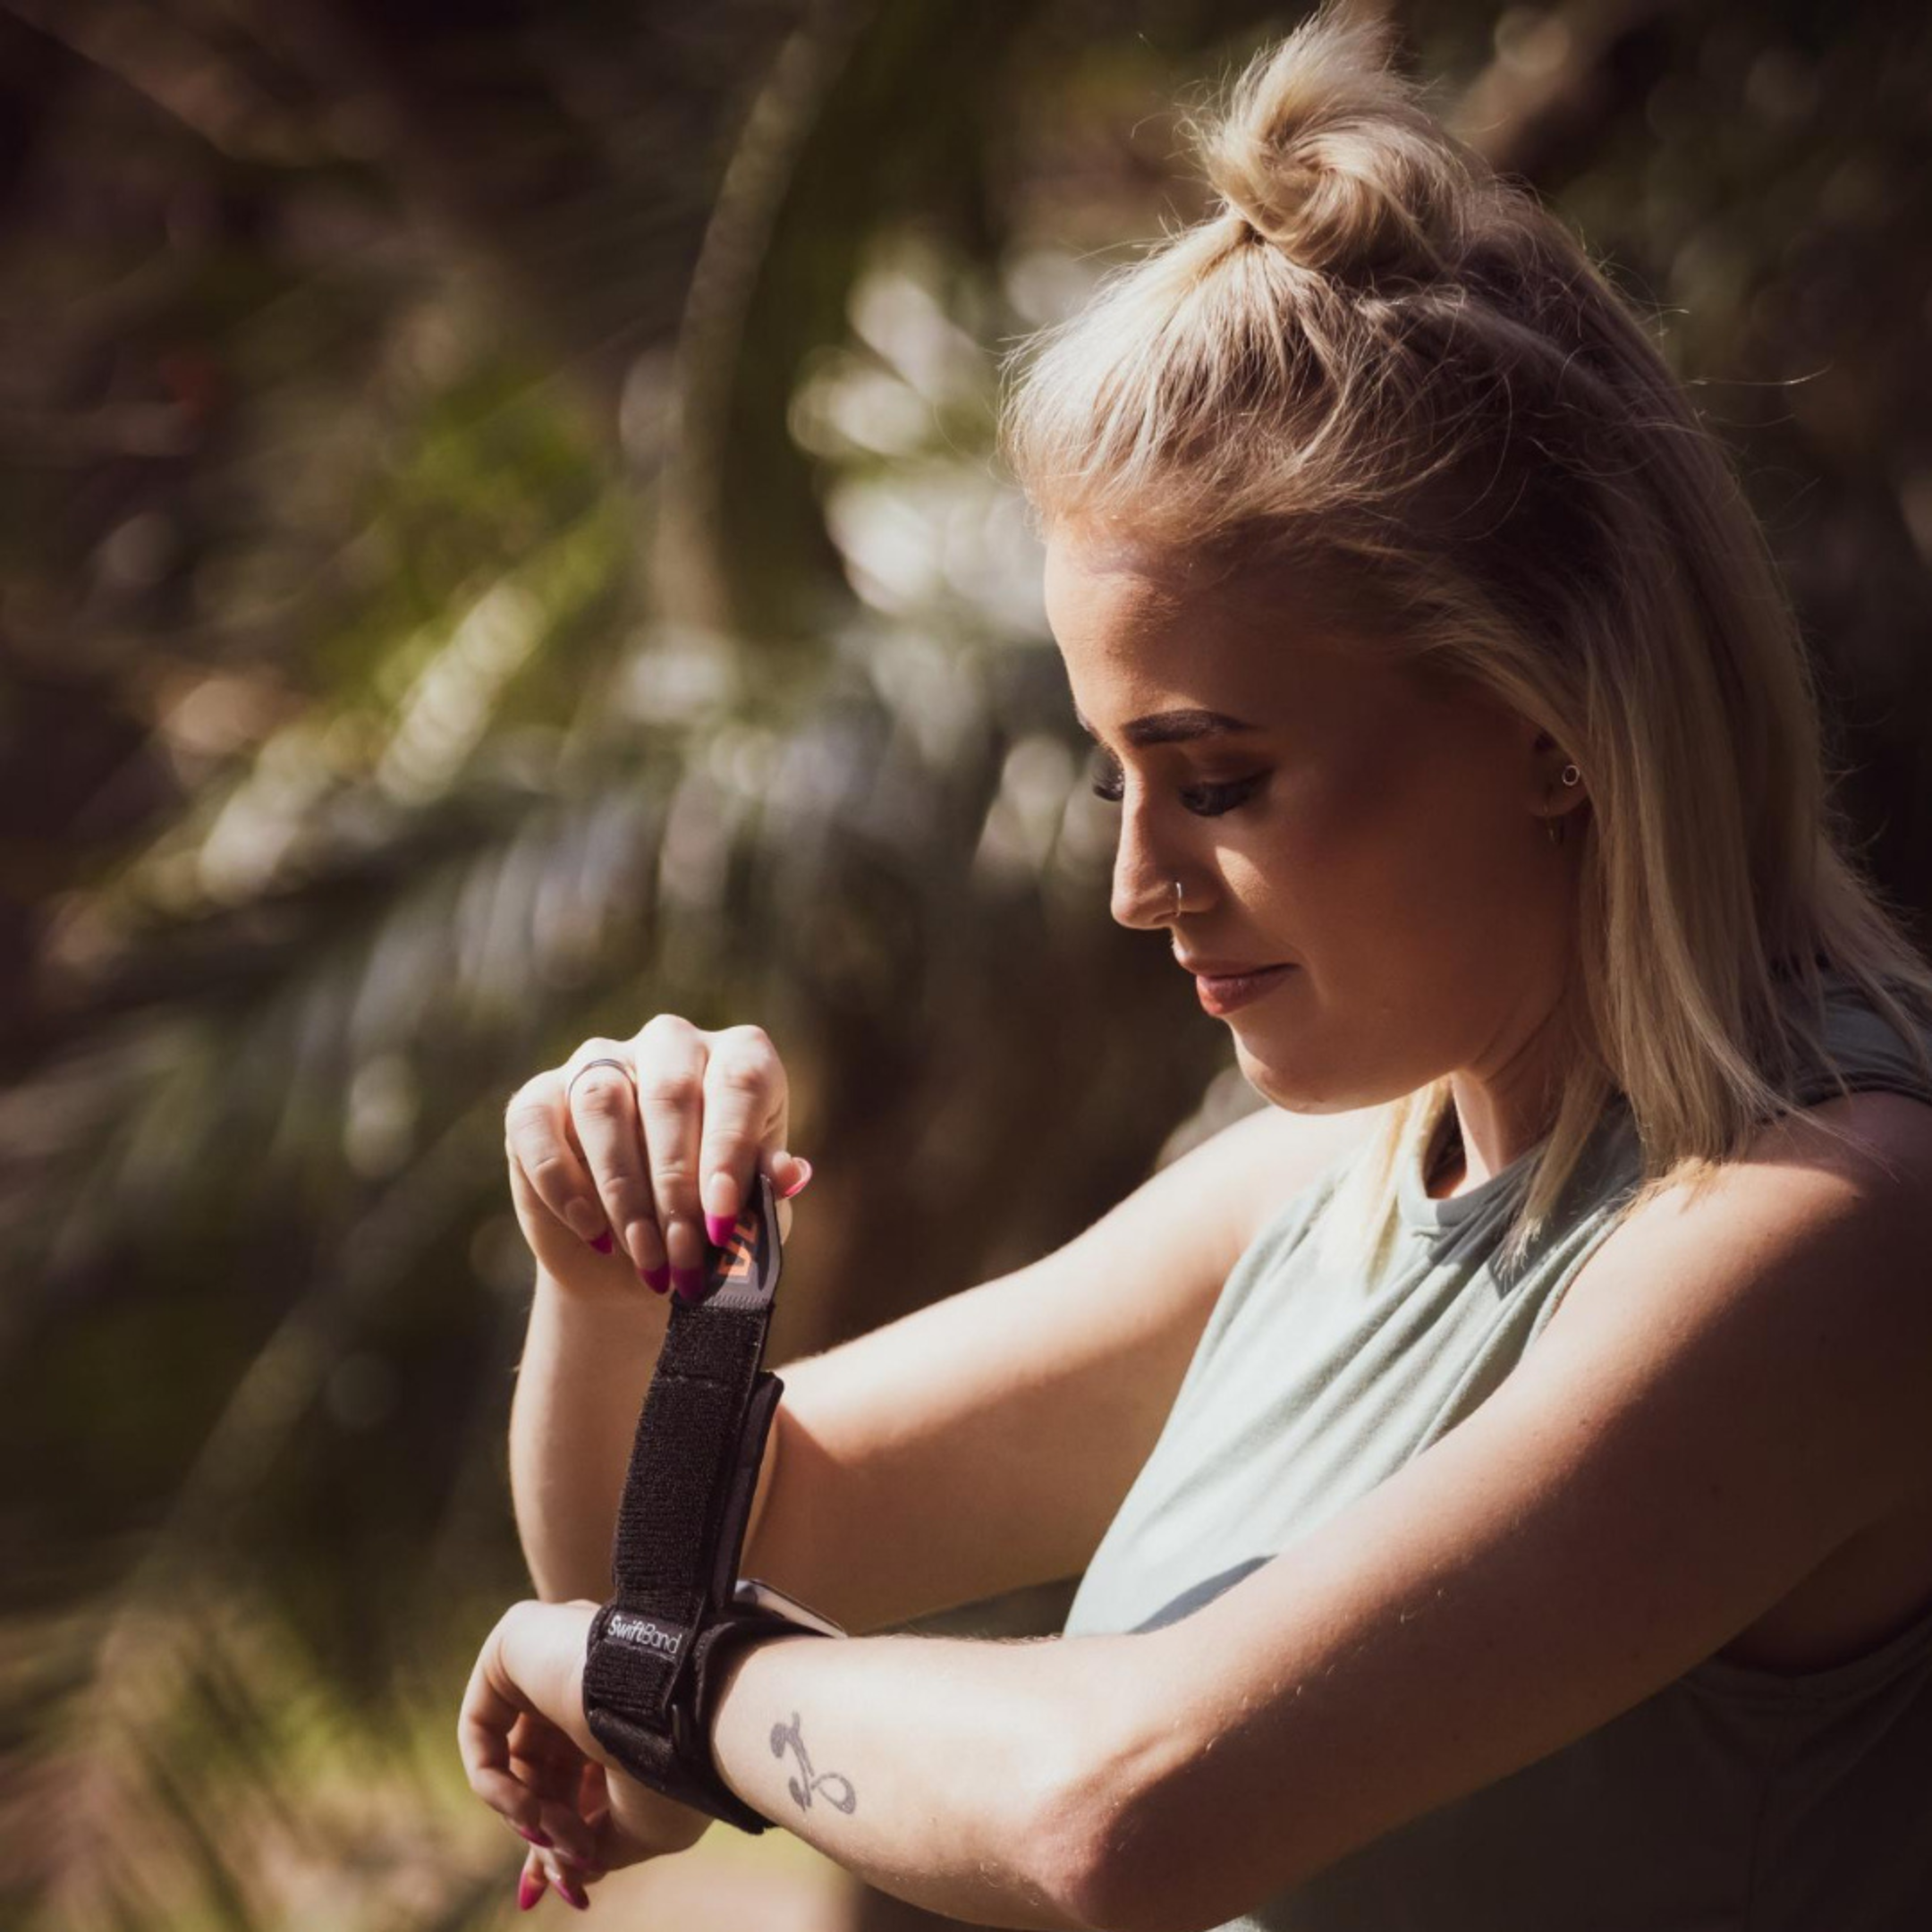 Colorcuff SwiftBand - Universal Smartwatch Schutzband, Sportuhr Schutz, kompatibel mit Apple Watch, Garmin, Polar, Fitbit, Coros, Amazfit